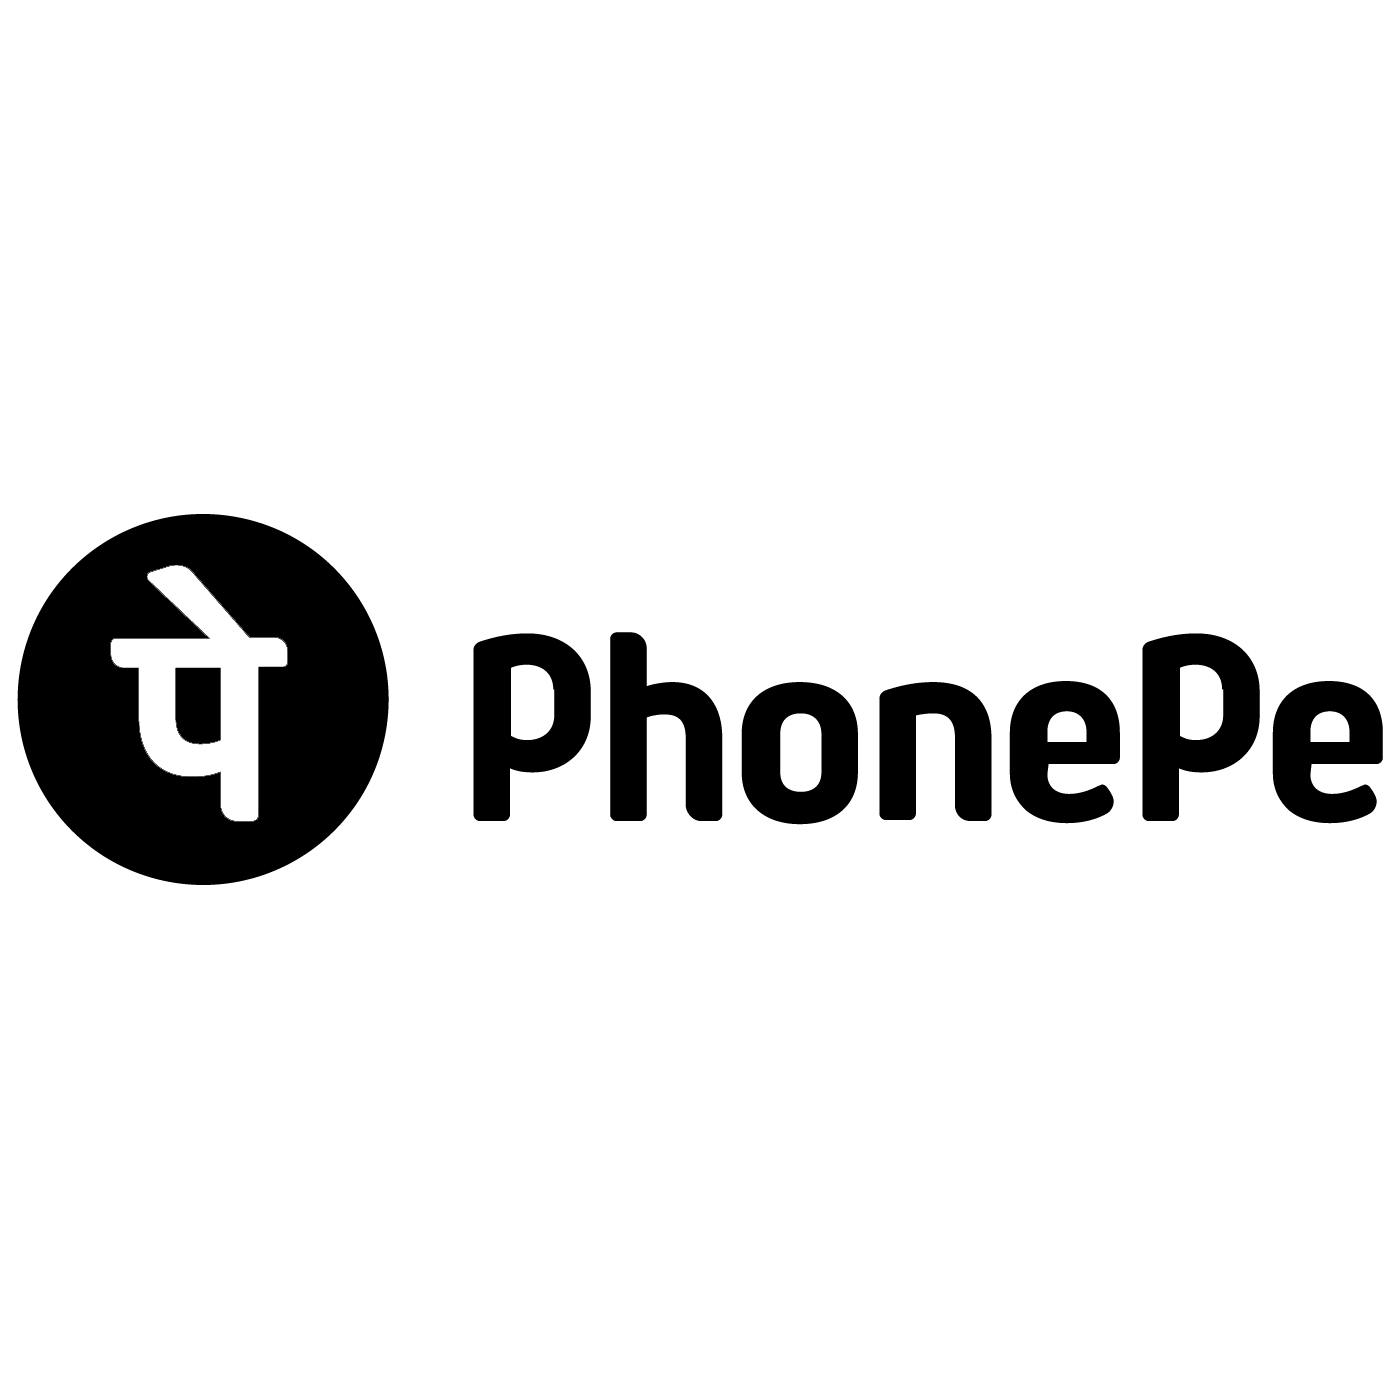 Phonepe Logo Transparent Photo